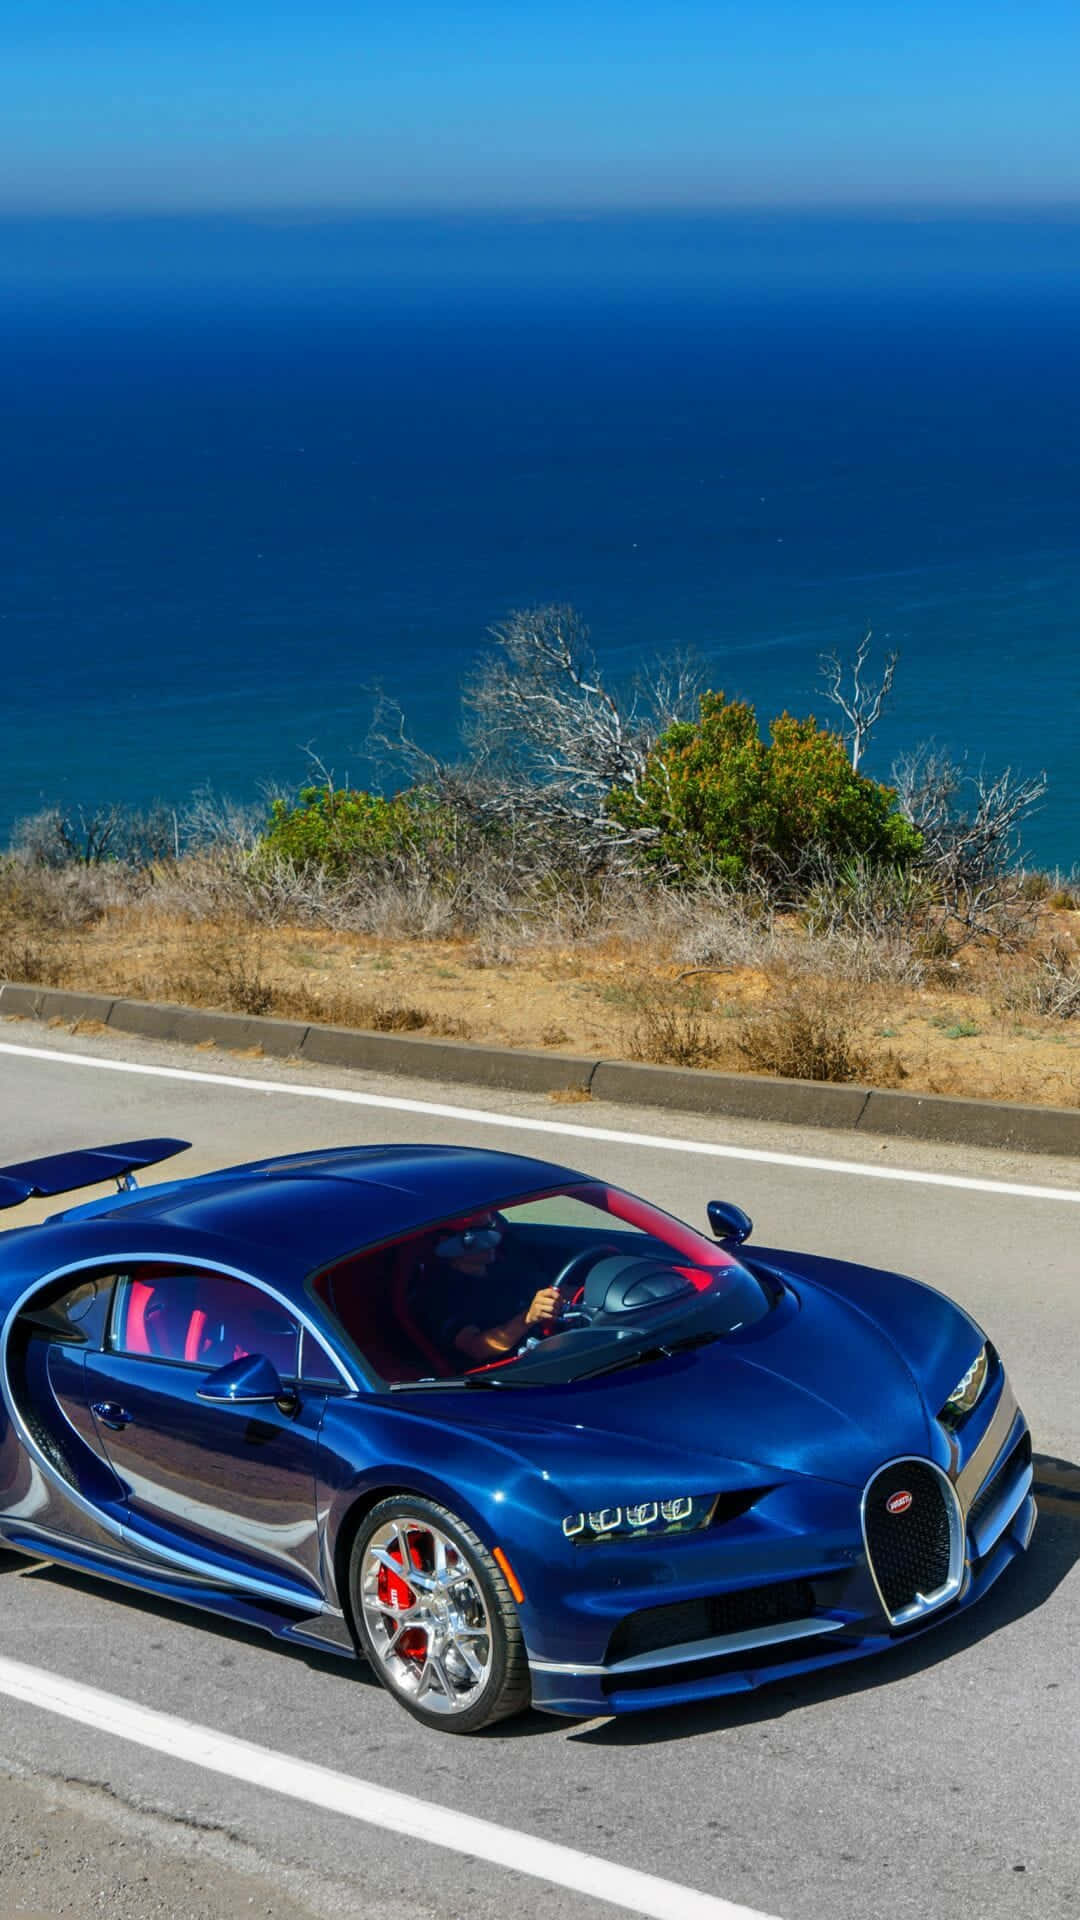 Unosguardo Alla Splendida Auto Bugatti Sfondo